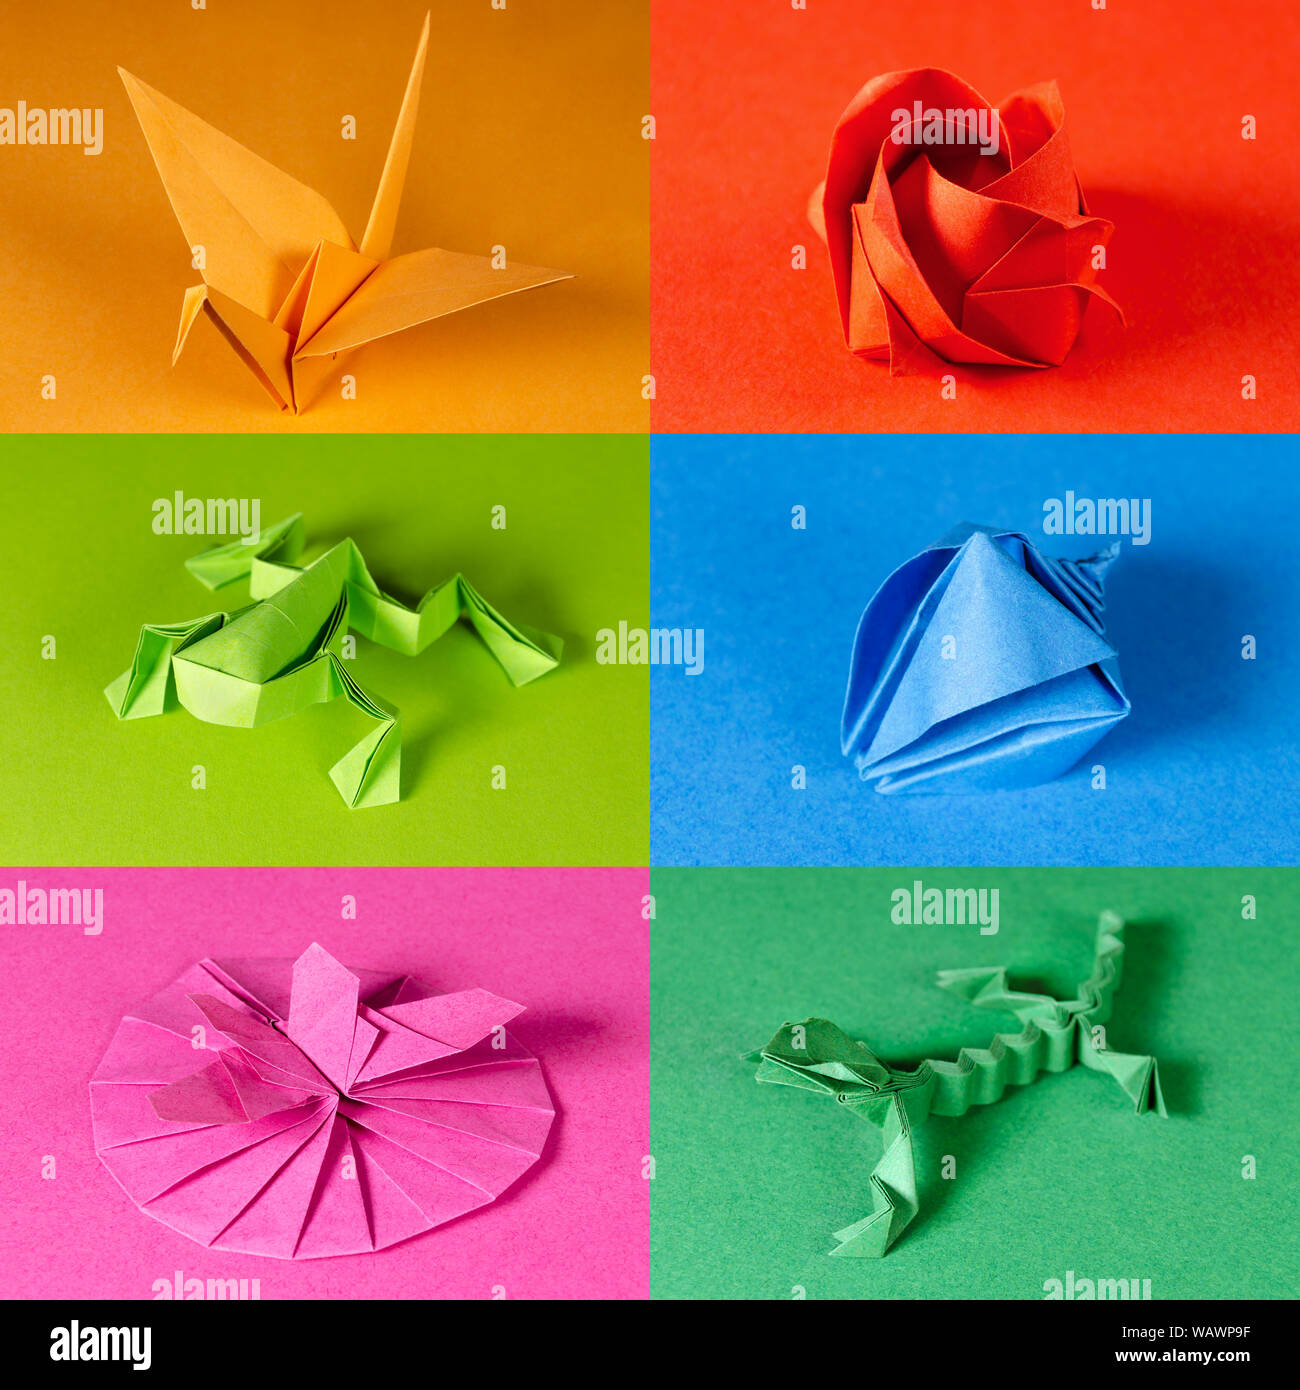 Farbige origami Papier Figuren auf farbigen Hintergründen. Kran, Rose, Frosch, Muschel, Schmetterling auf Blüte und Eidechse. Japanisches Papier falten Art. Stockfoto